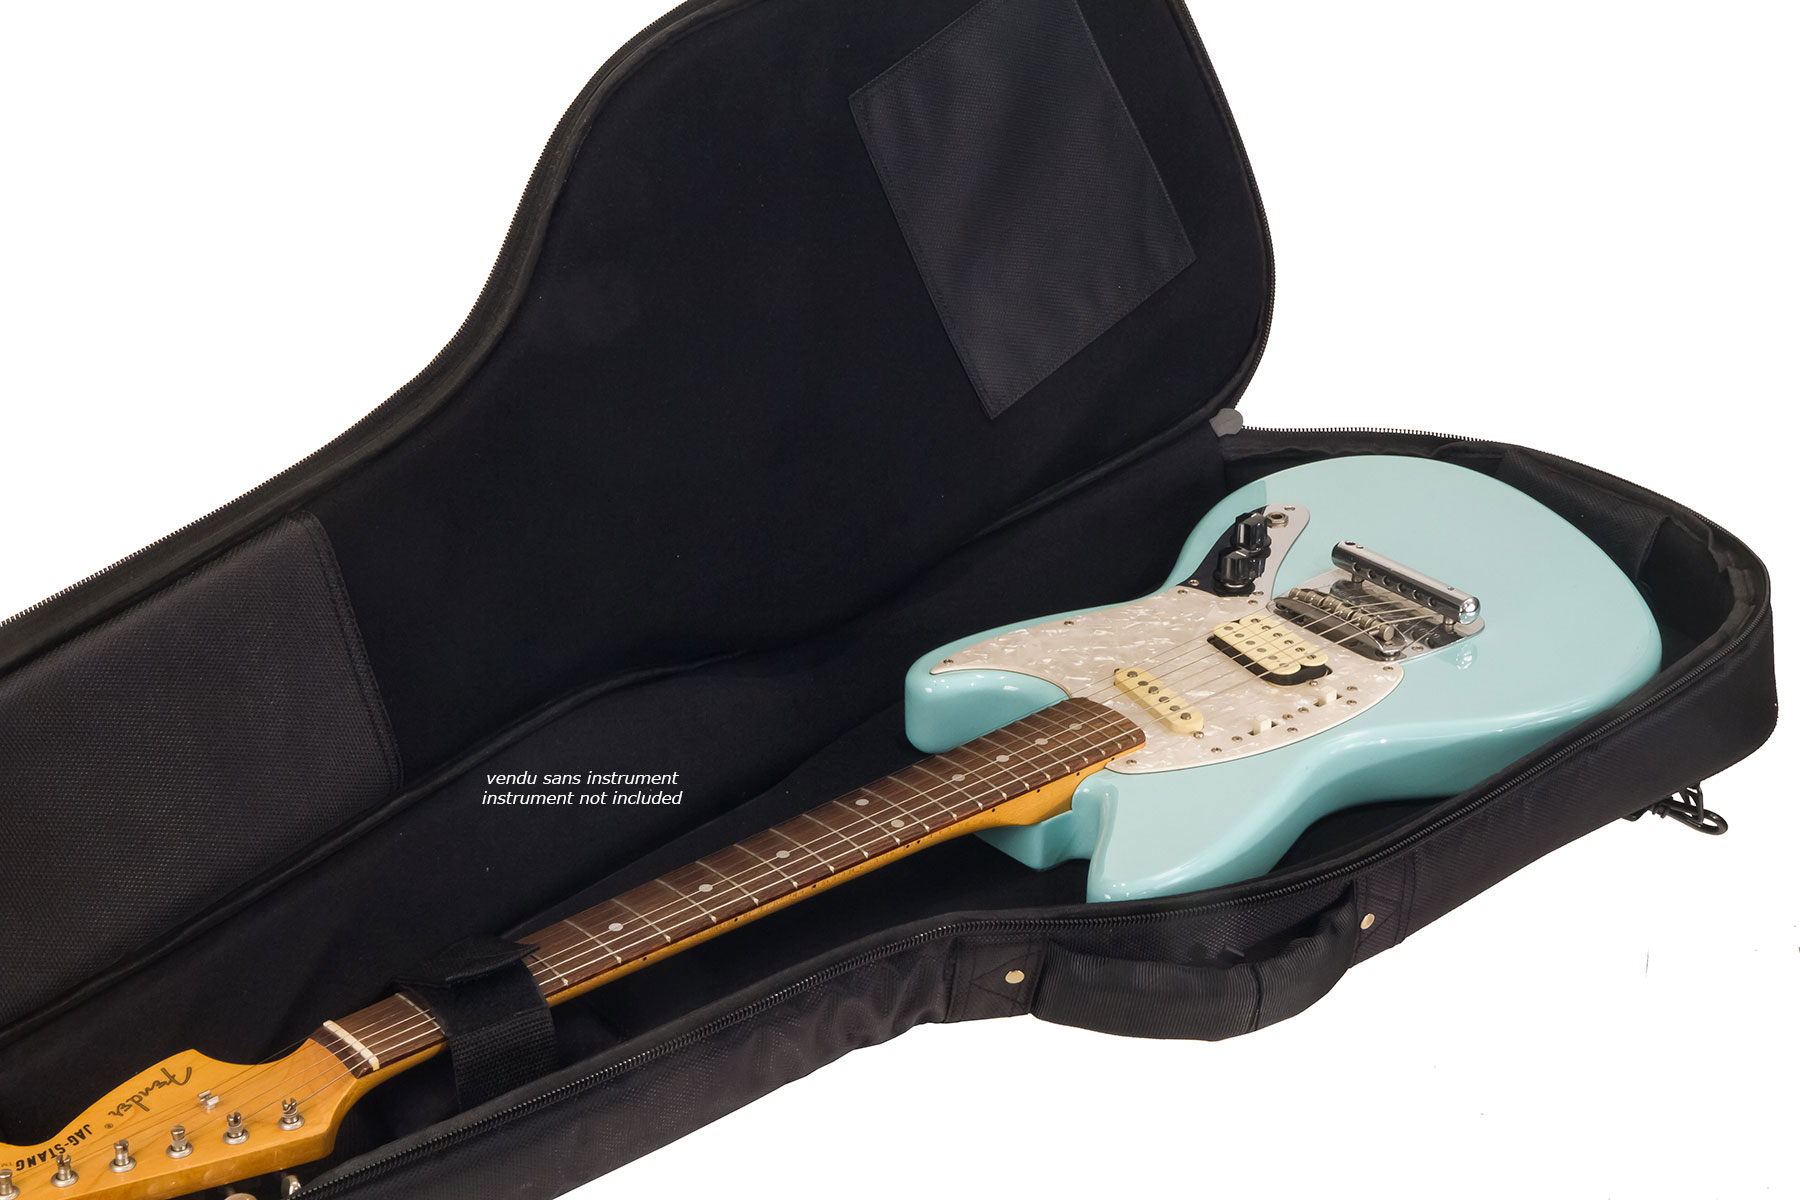 X-tone 2020 Ele-bk Light Deluxe Electric Guitar Bag Black (2083) - Electric guitar gig bag - Variation 5